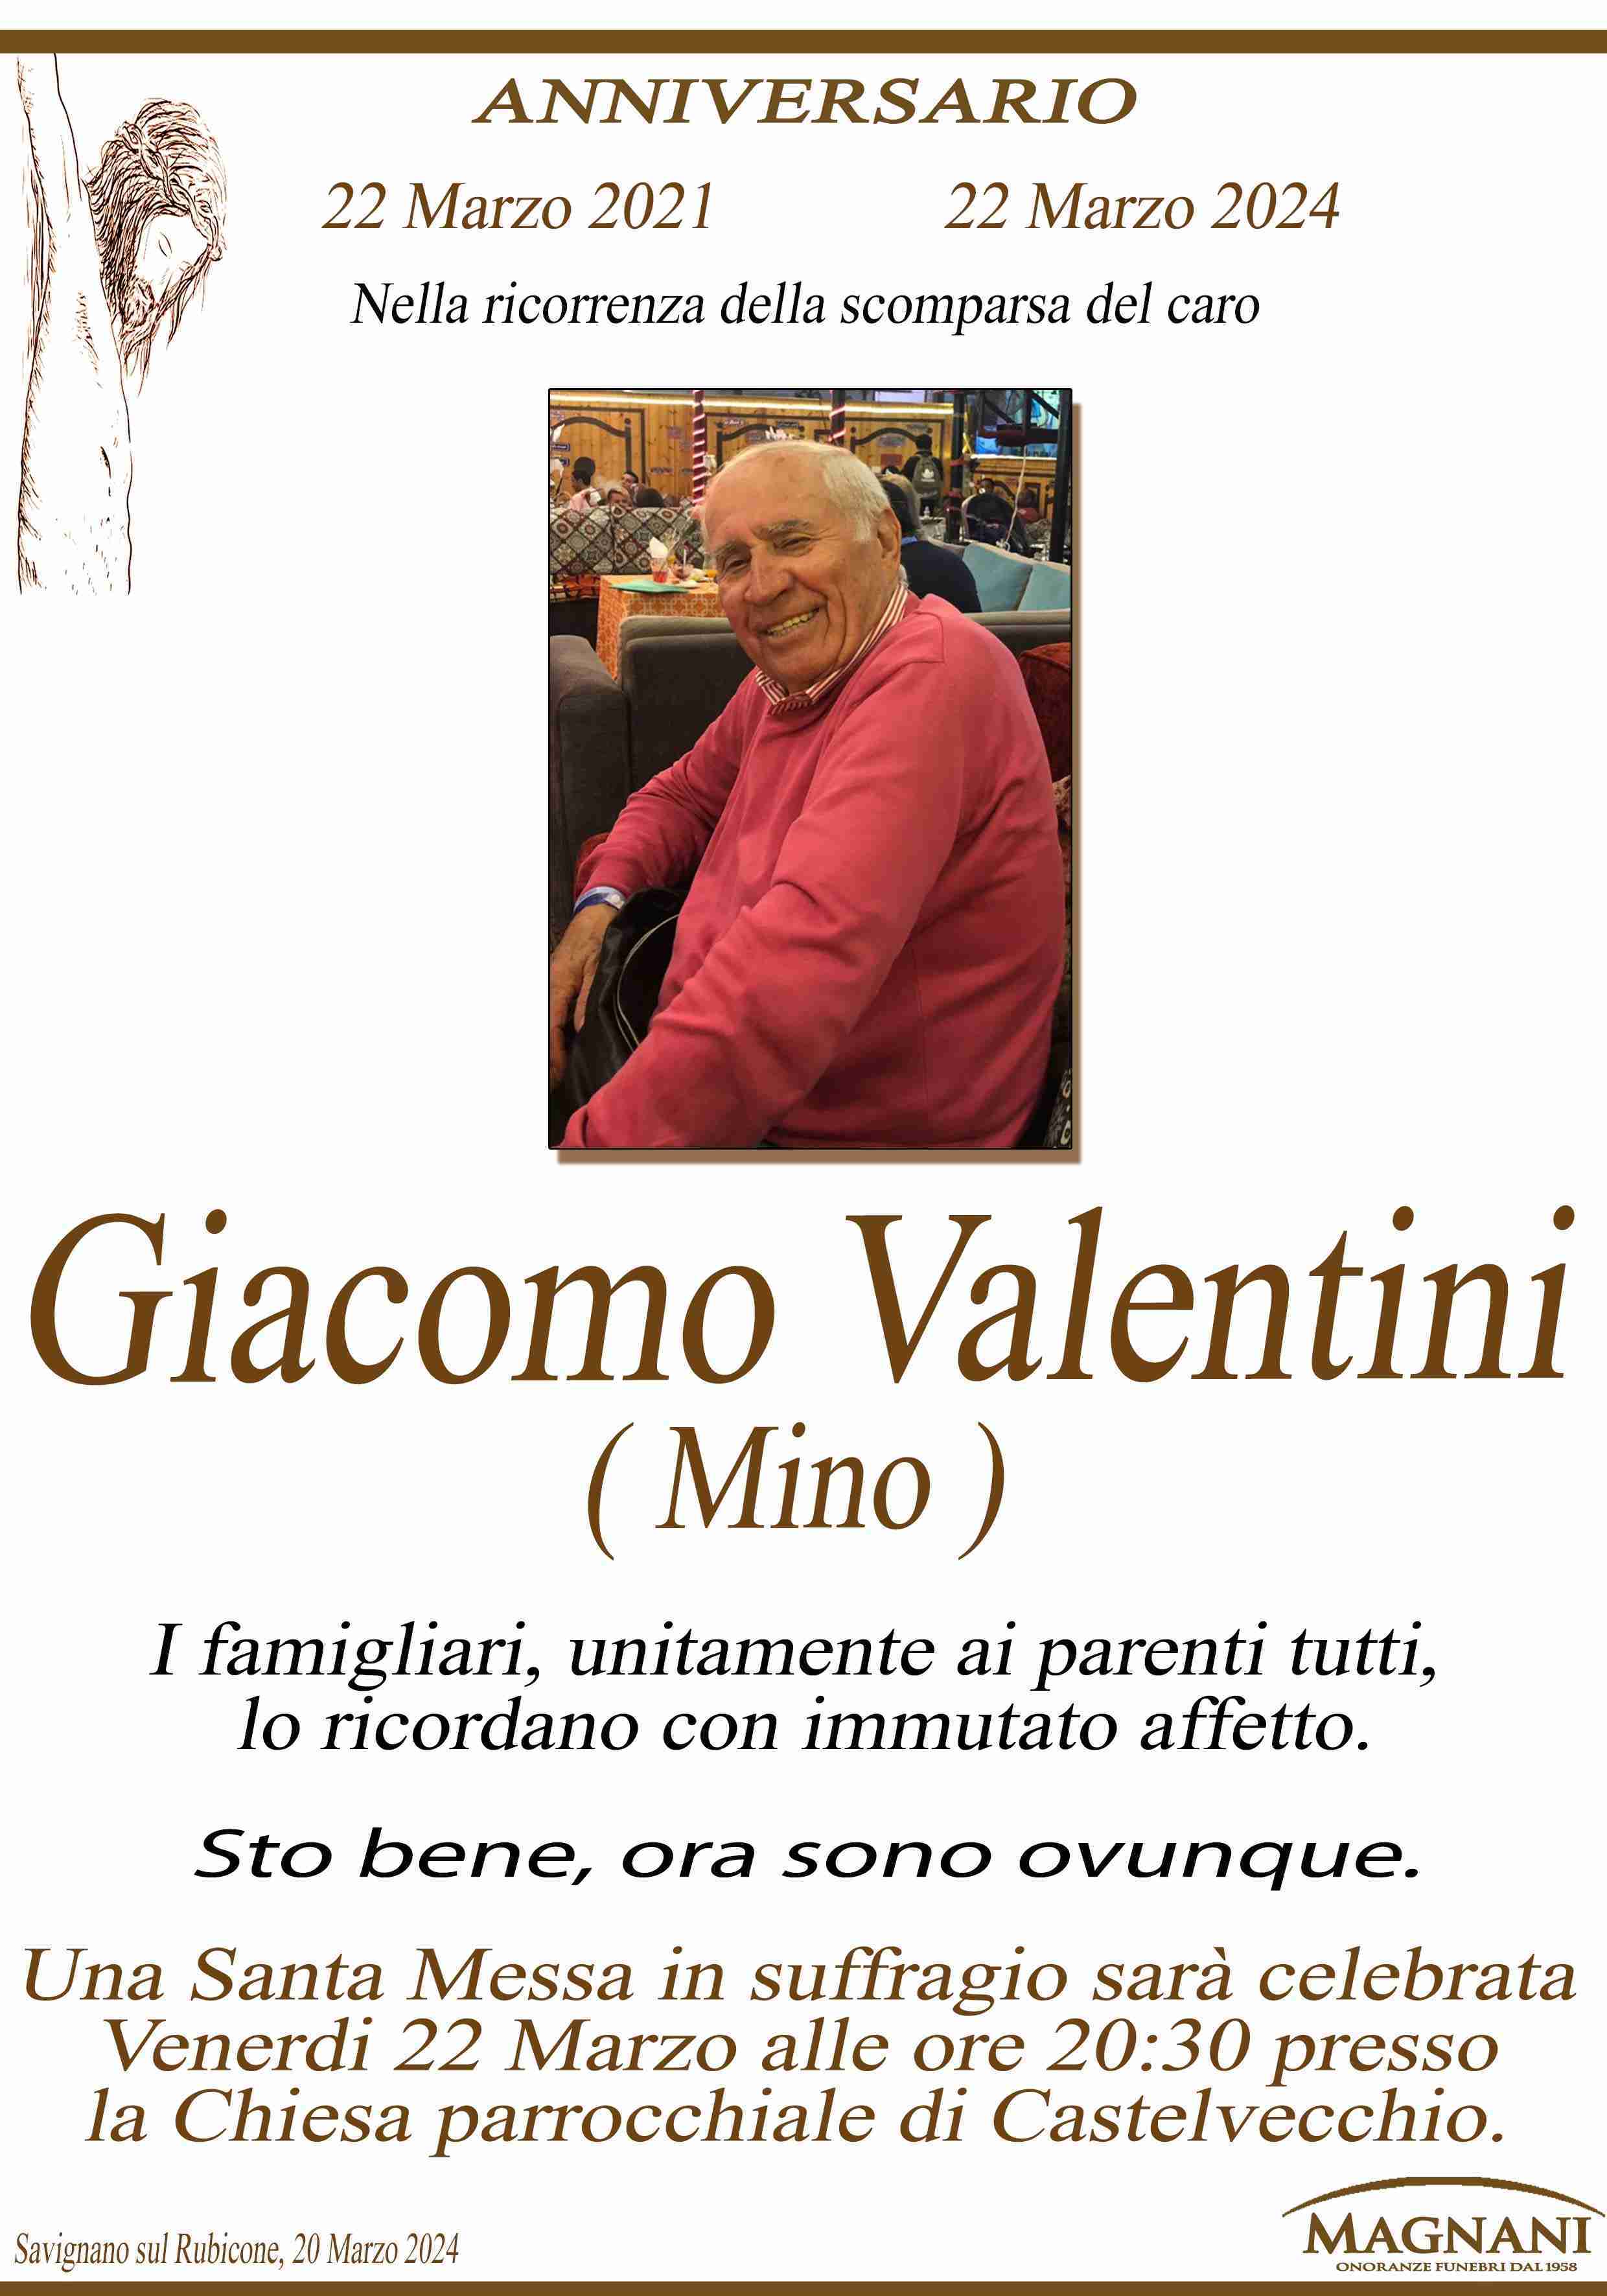 Giacomo Valentini